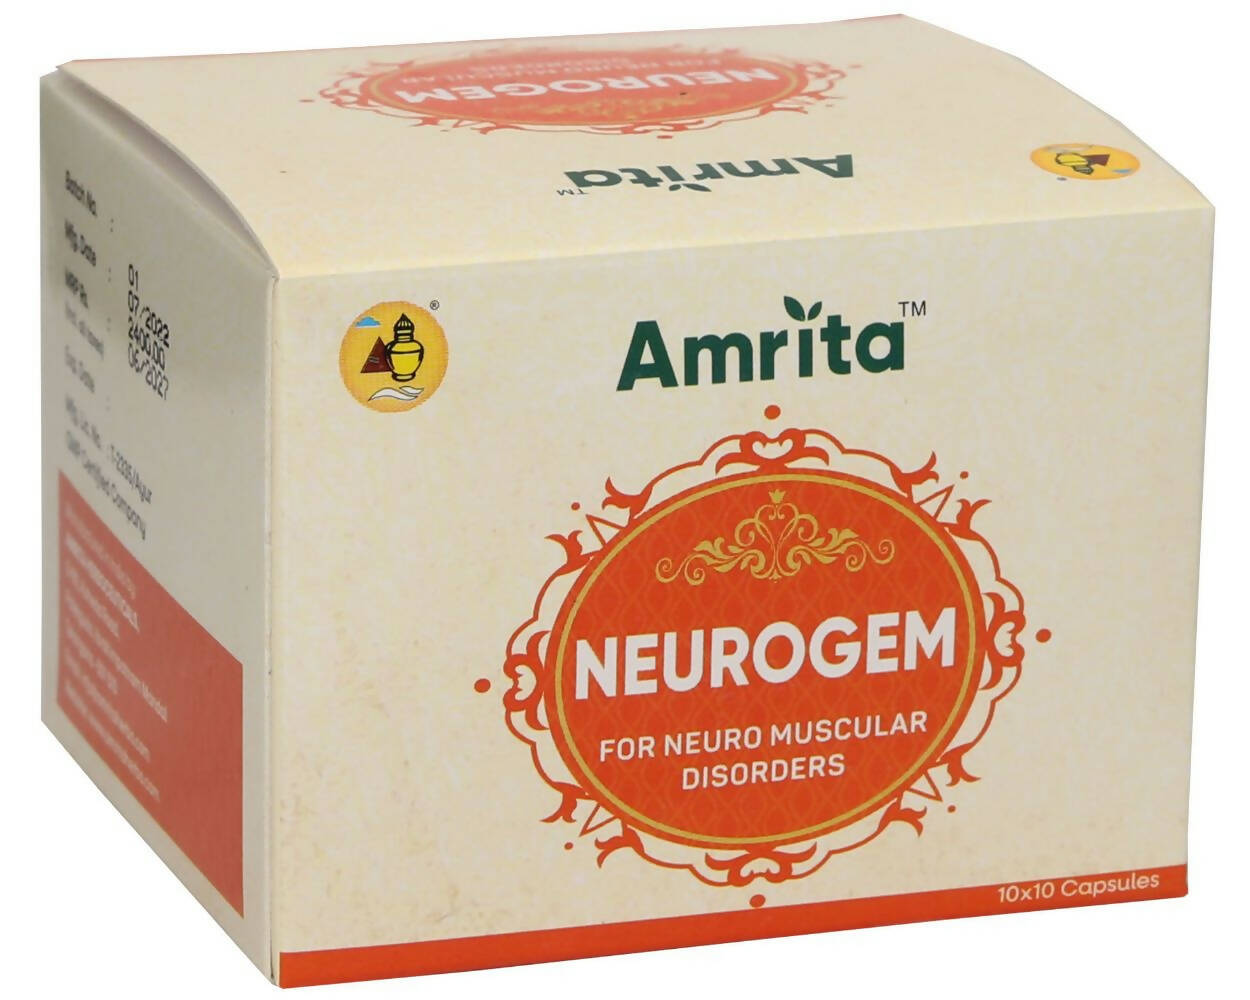 Amrita Neurogem Capsules